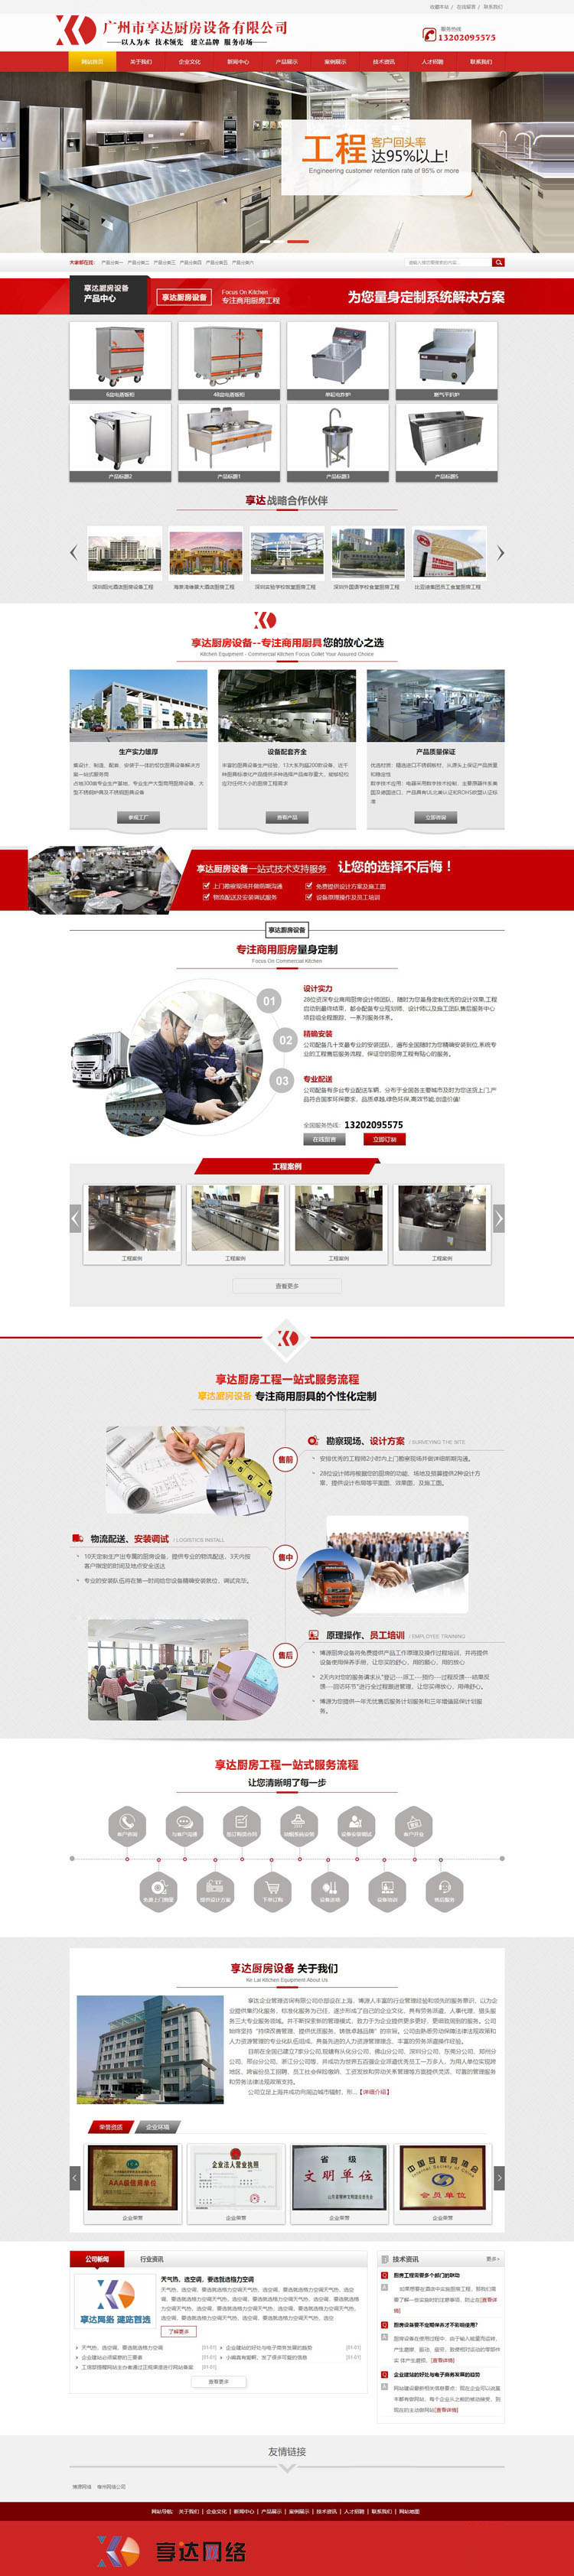 清远厨房设备蒸箱厂家网站制作 |  厨房设备配置网站设计图片